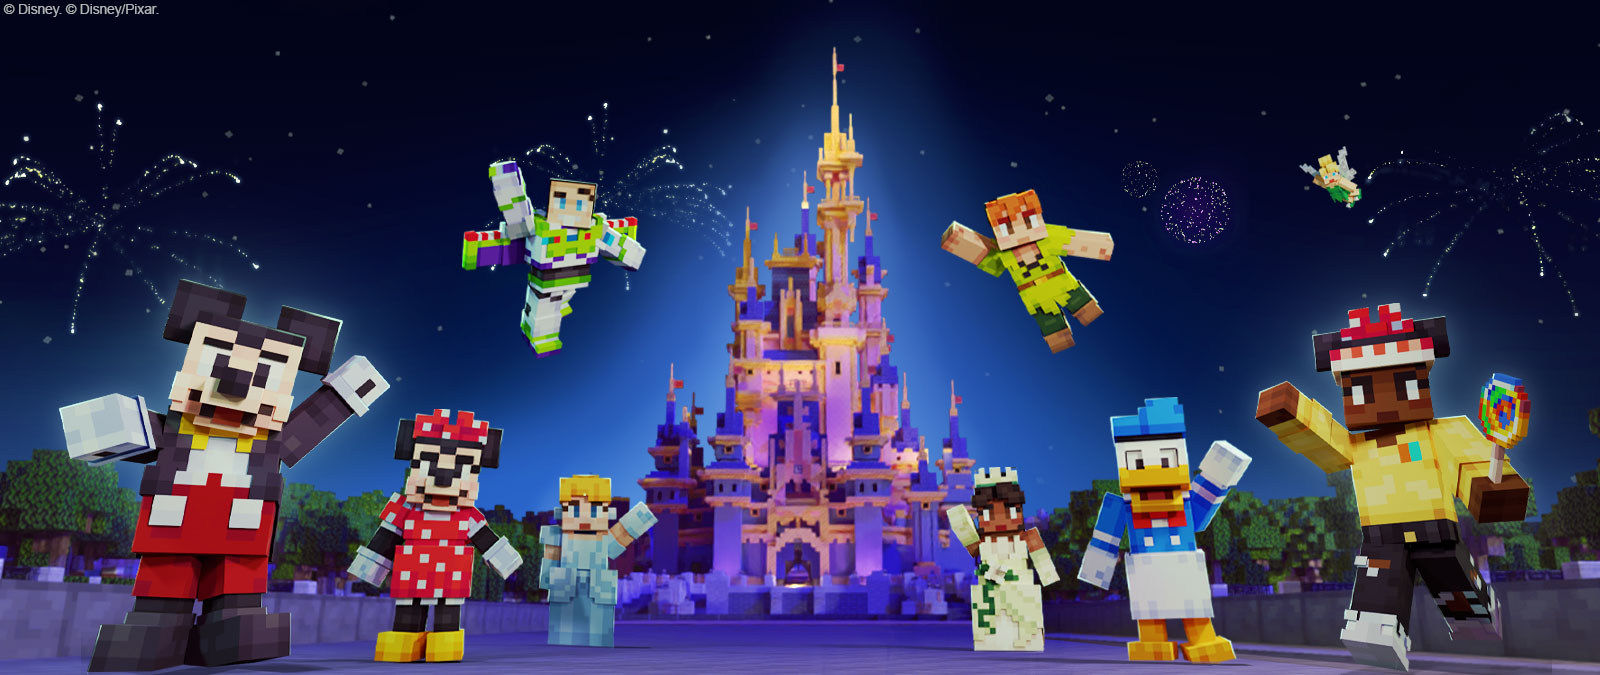 디즈니 성 앞에 모인 Minecraft 스타일의 미키마우스, 미니마우스, 버즈 라이트이어, 신데렐라, 피터팬, 티아나, 도날드 덕, 팅커벨과 또 다른 캐릭터 하나